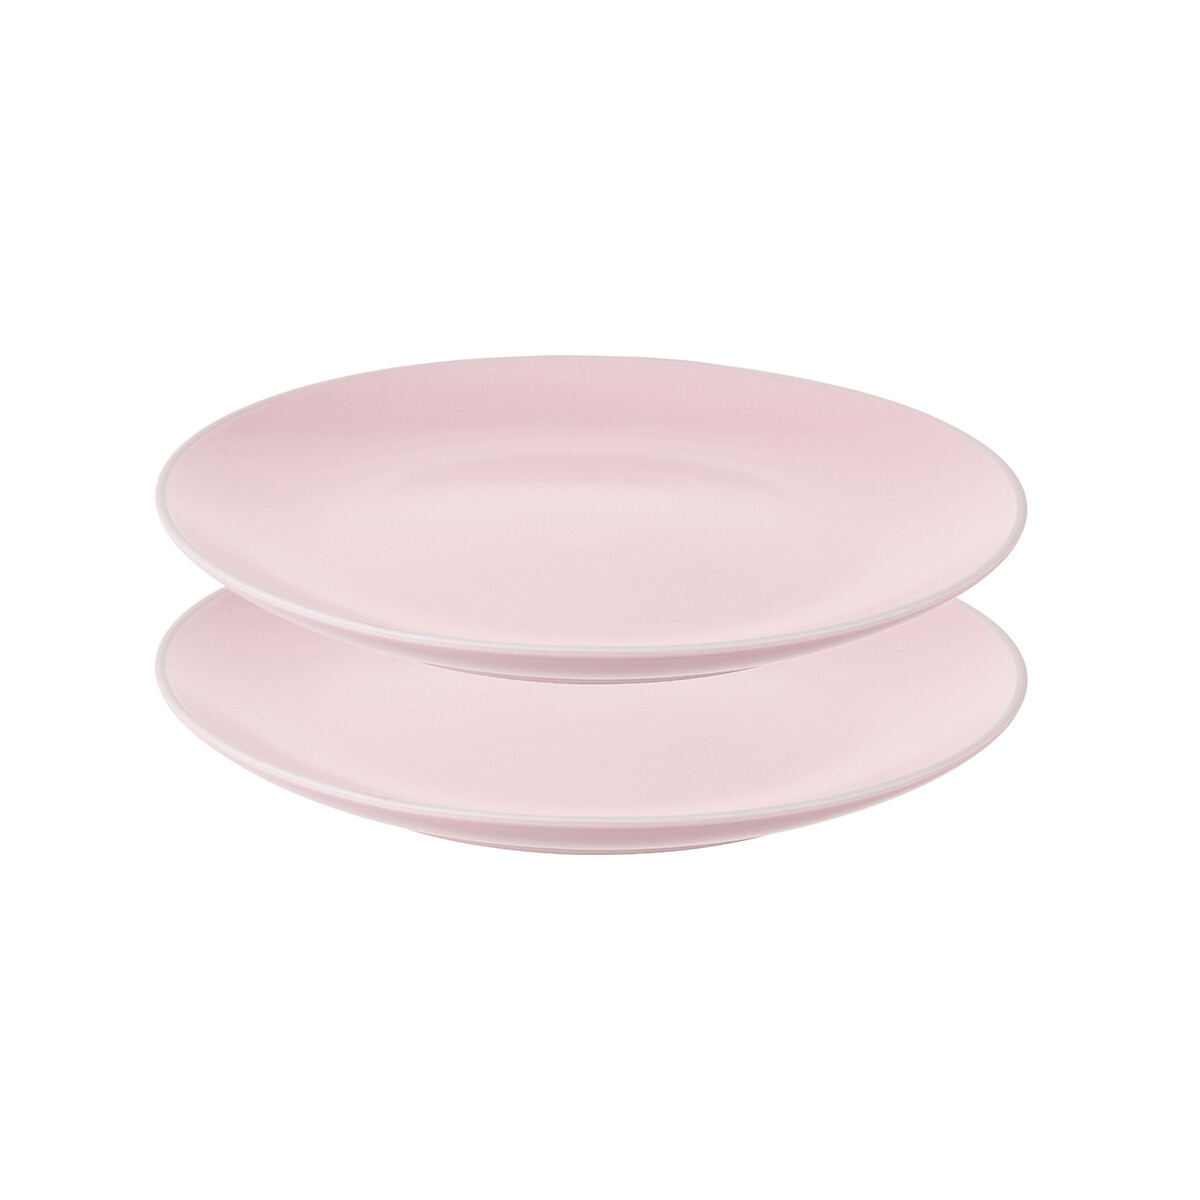 цена Набор тарелок Simplicity 215 см розовые 2 шт единый размер розовый